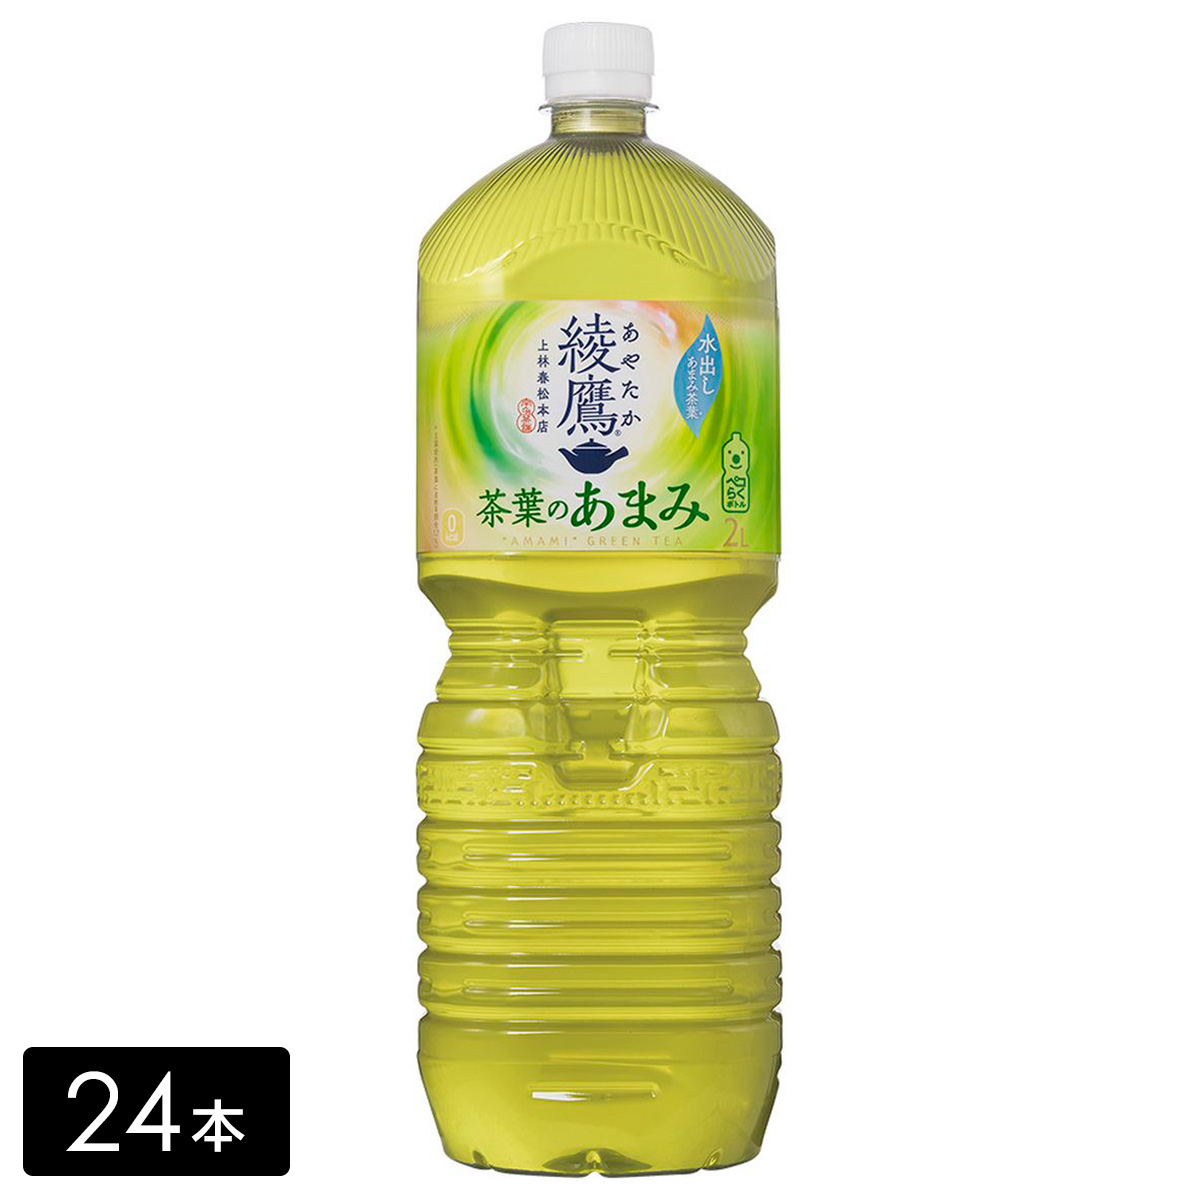 綾鷹 緑茶 茶葉のあまみ 2L×24本(6本×4箱)